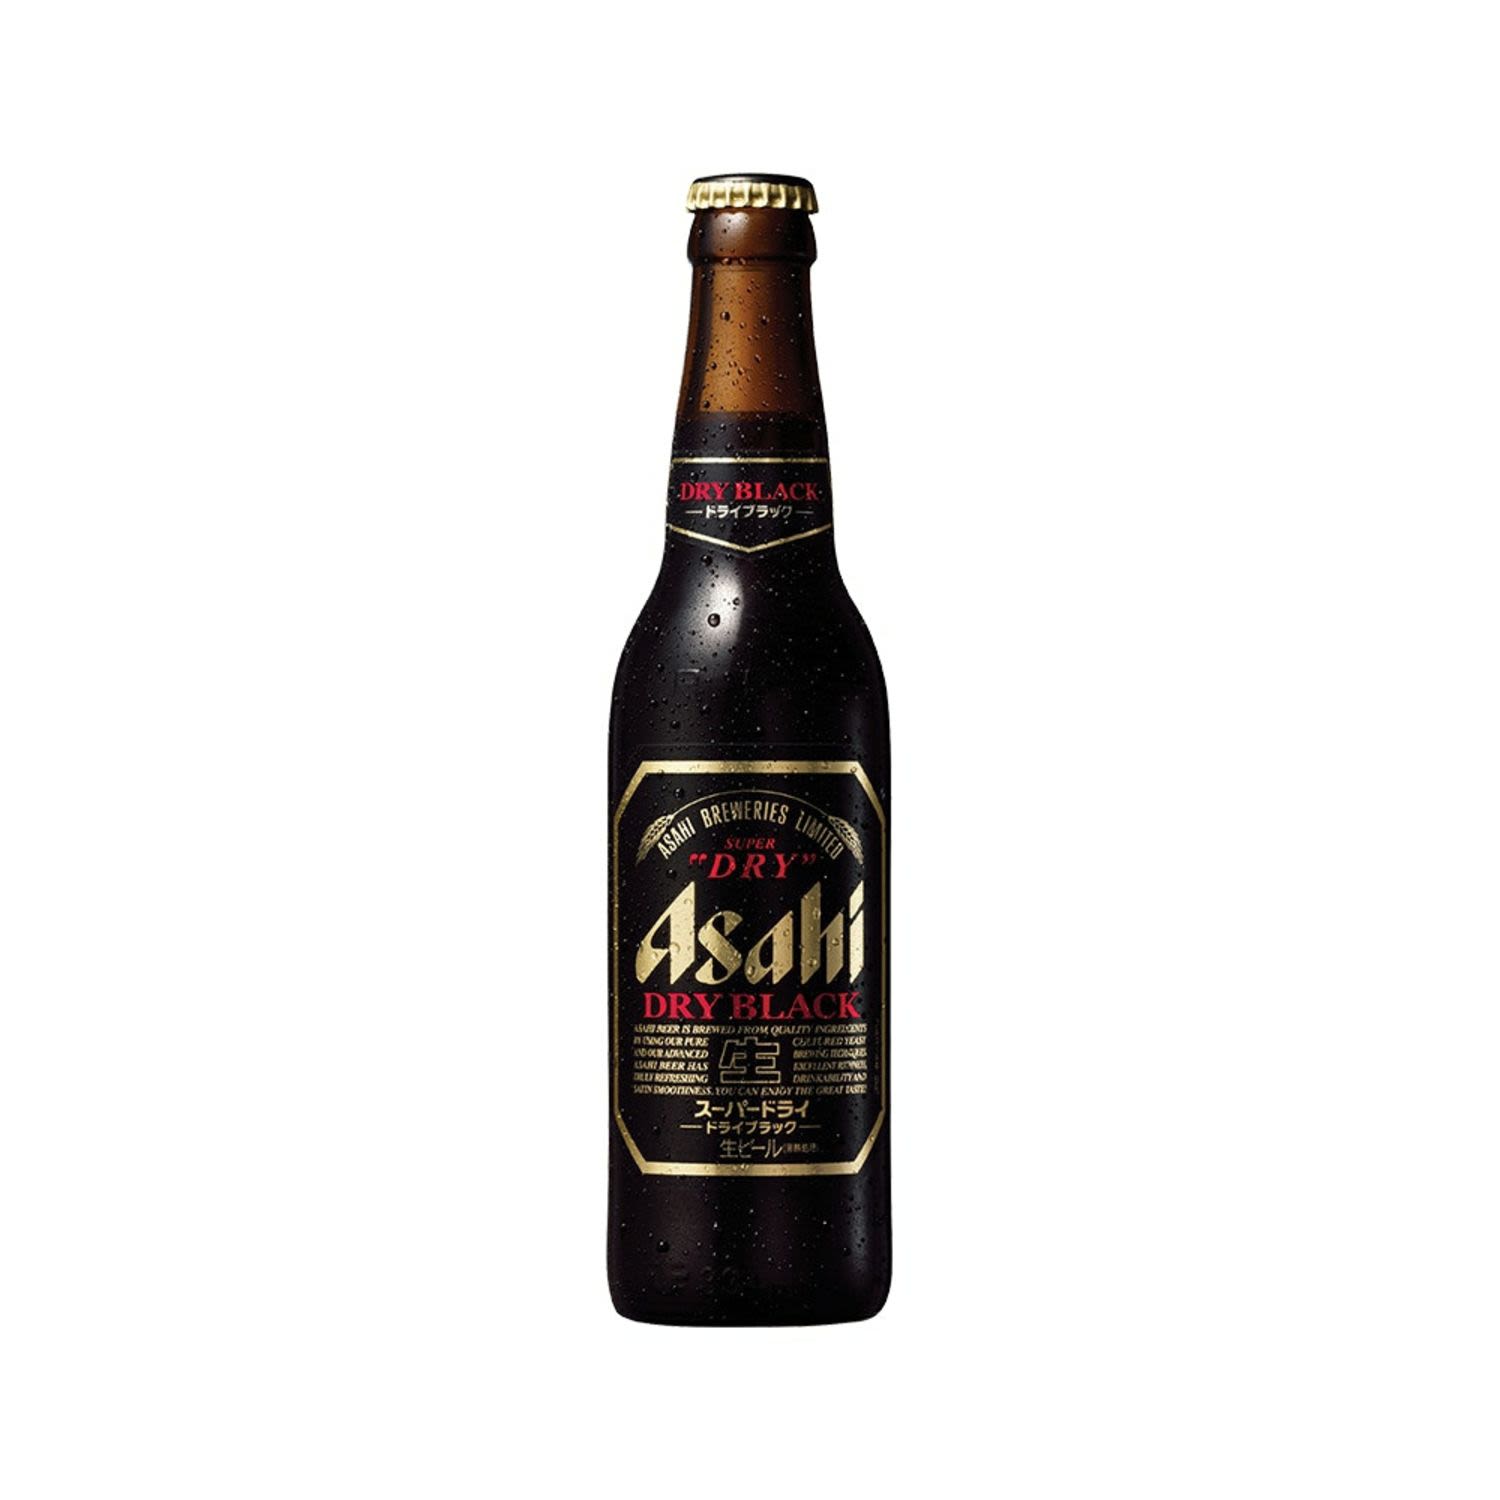 Asahi Super Dry Black Bottles <br /> <br />Alcohol Volume: 5.50%<br /><br />Pack Format: 6 Pack<br /><br />Standard Drinks: 1.5</br /><br />Pack Type: Bottle<br /><br />Country of Origin: Japan<br />